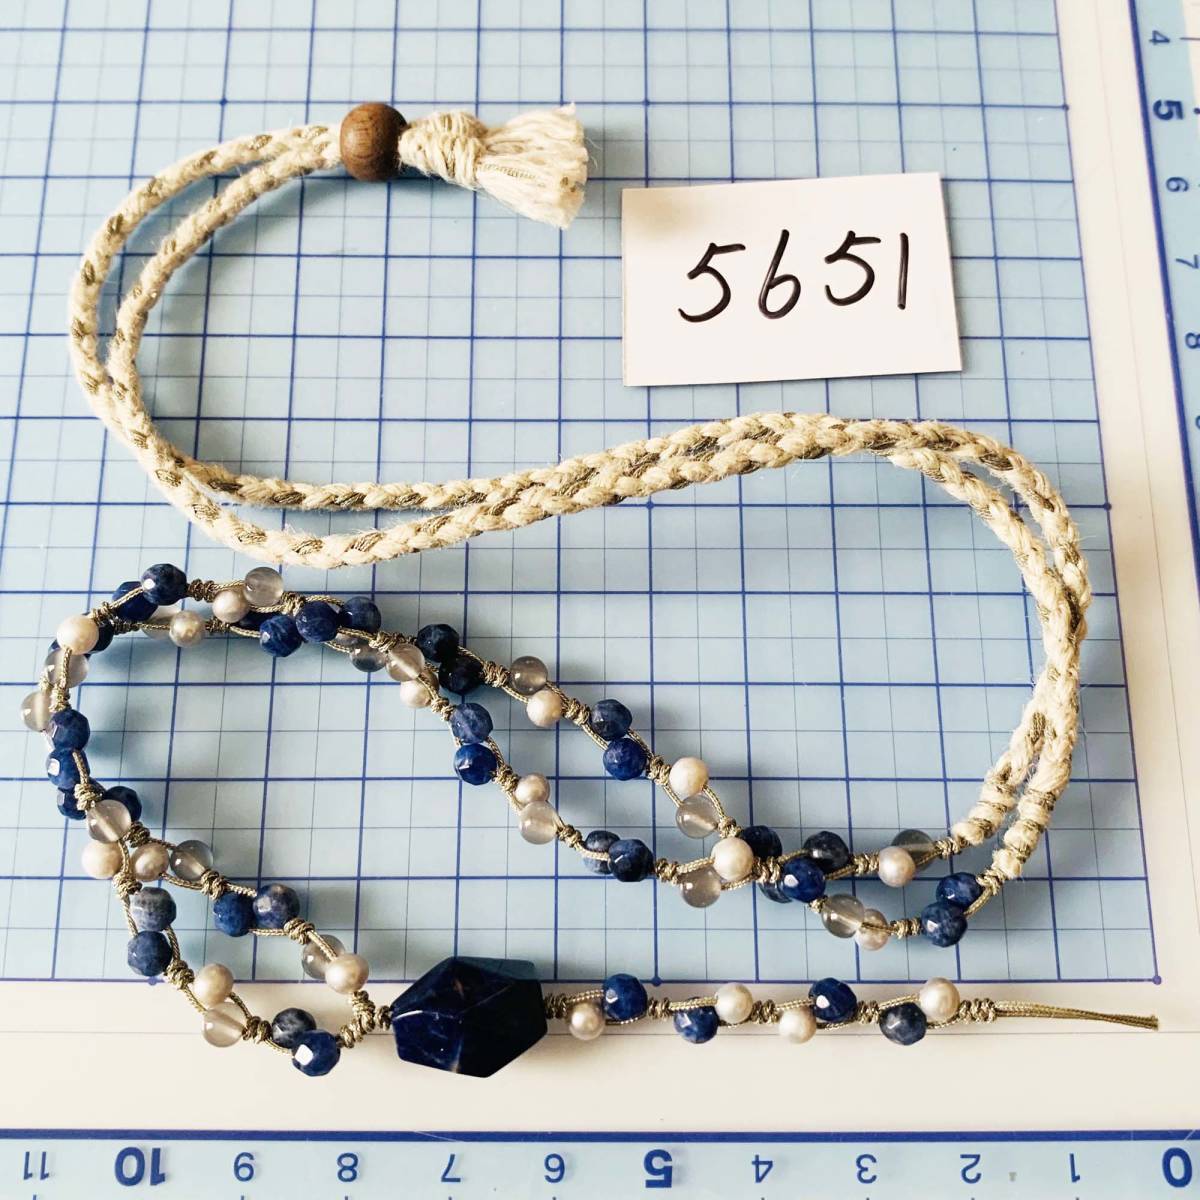 Gelagerter Artikel Unbenutzter Naturstein Süßwasserperle Perle Handgefertigte handgefertigte Halskette mit verstellbarer Länge Nr. 5651, Damenaccessoires, Halskette, Anhänger, Andere